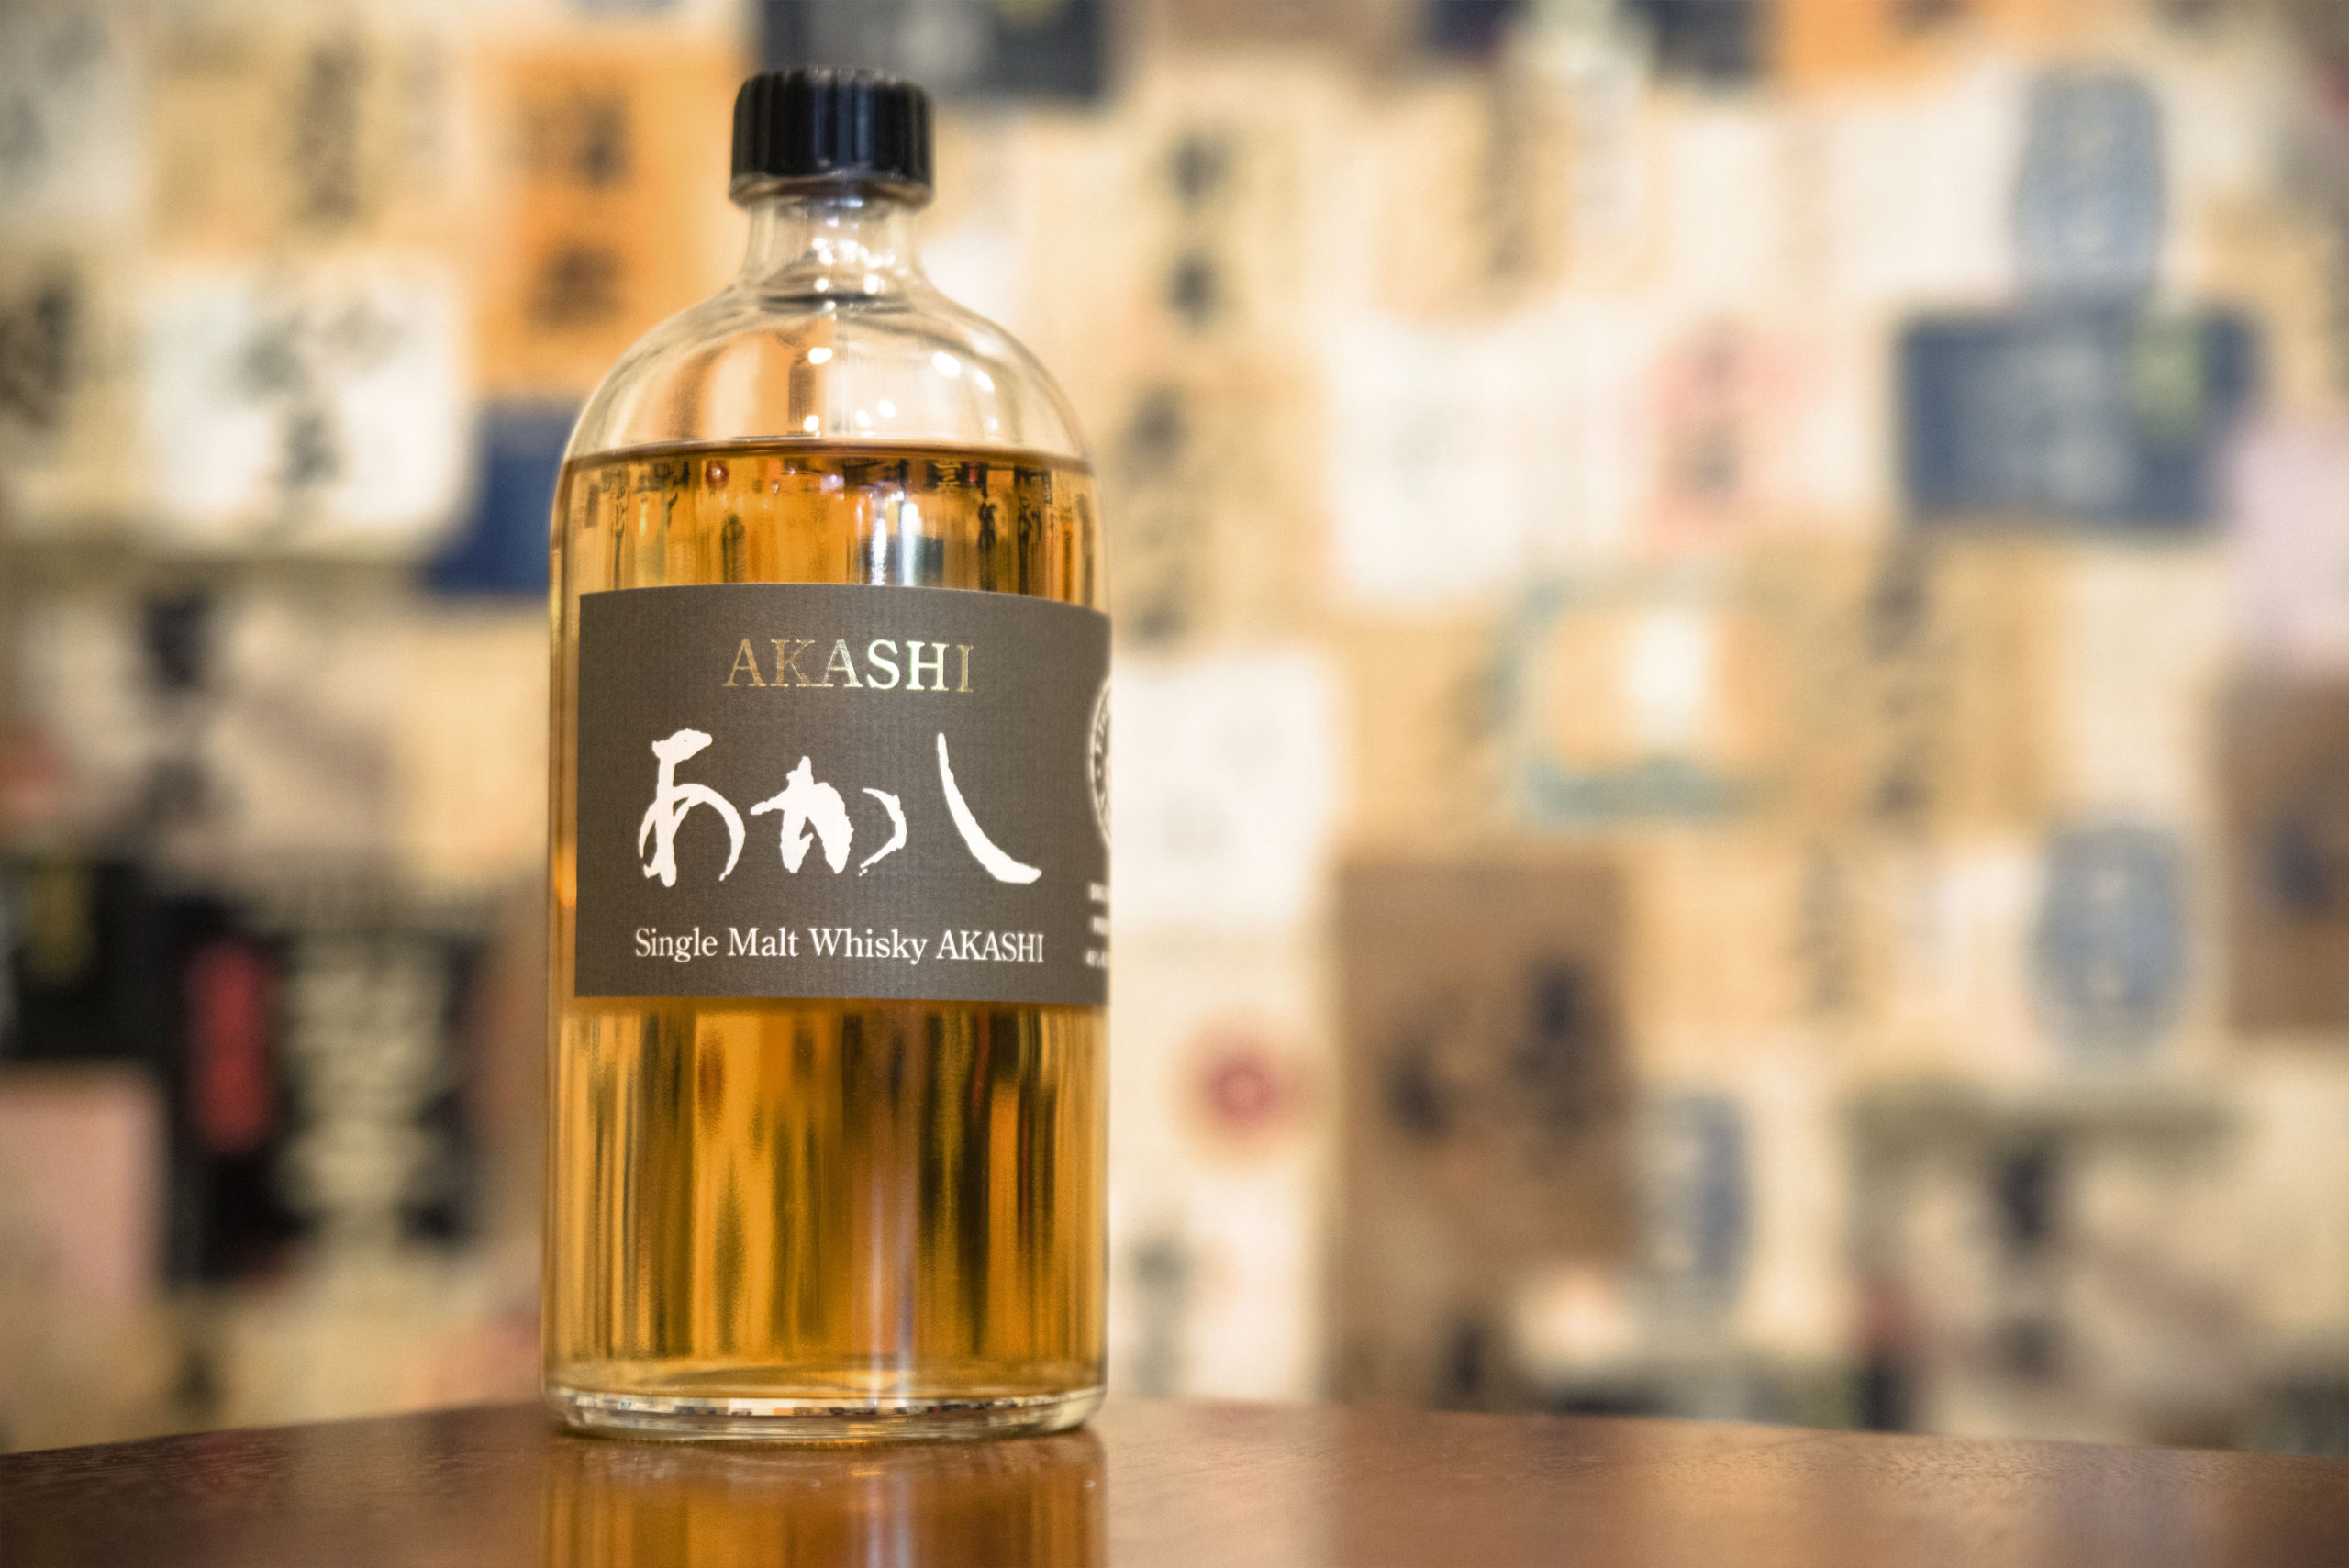 Akashi single malt whisky label up close